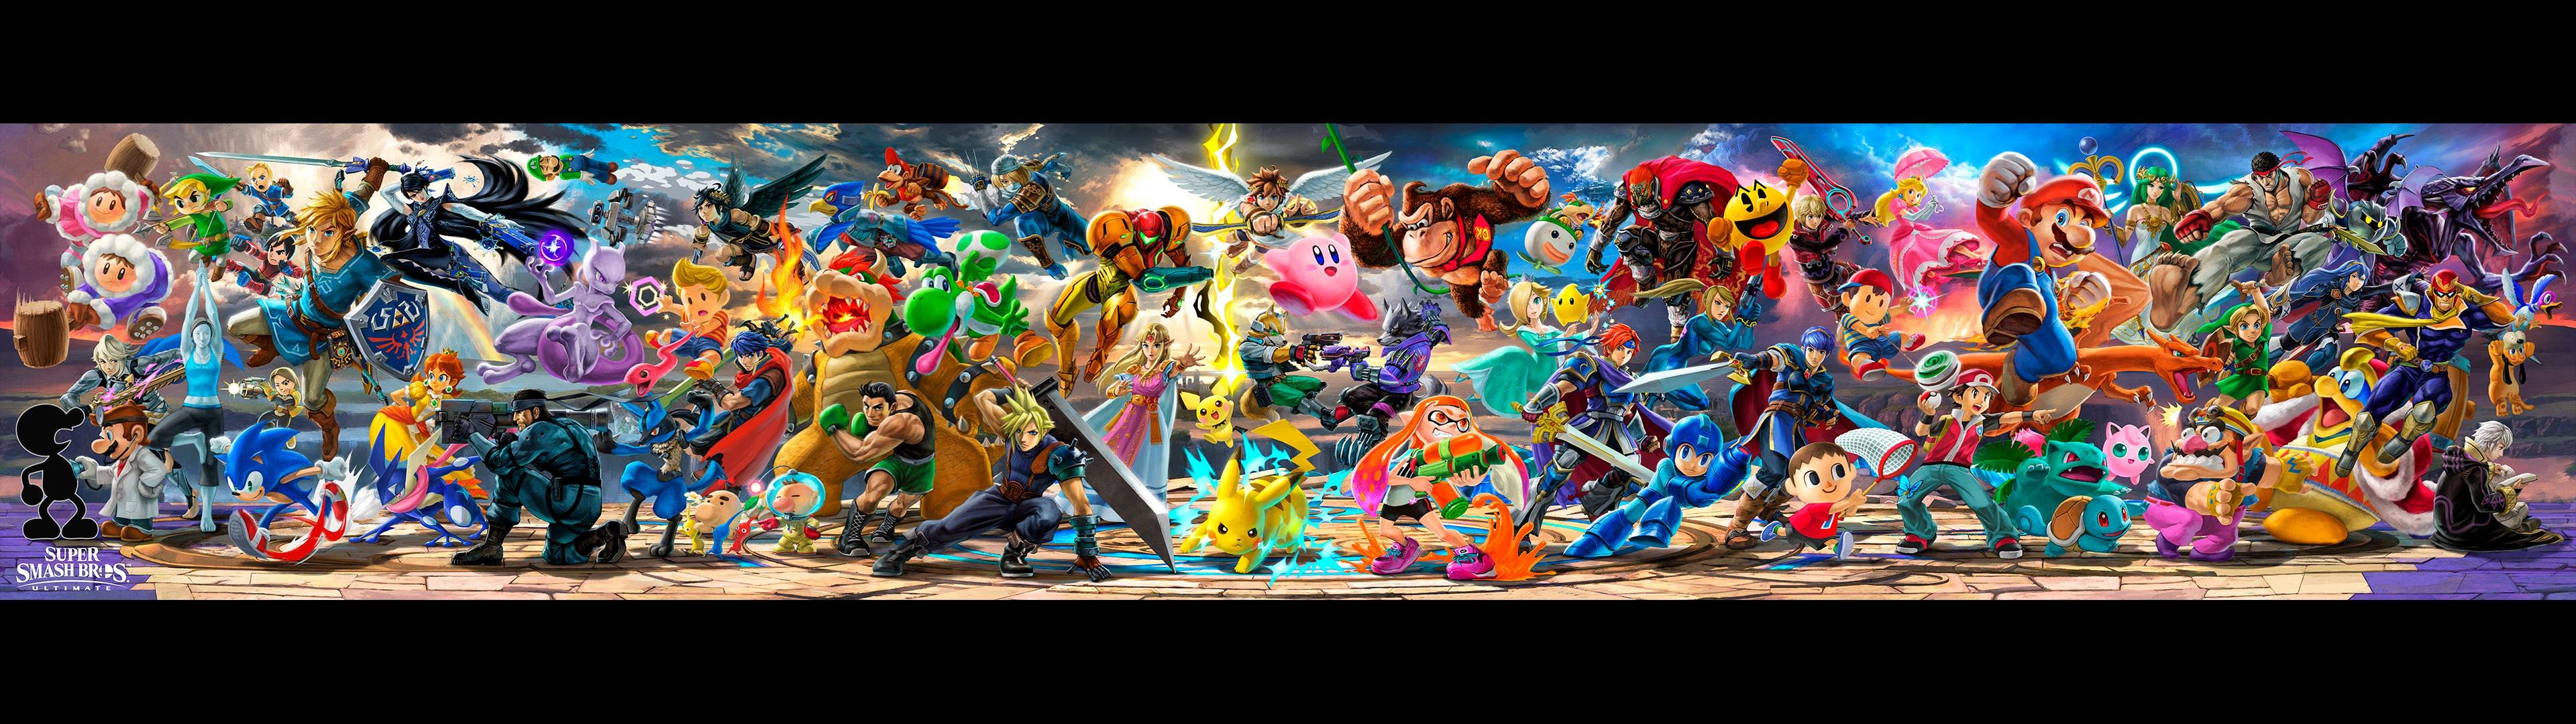 Super Smash Bros Ultimate Toutes Les Nouveaut S Sont L